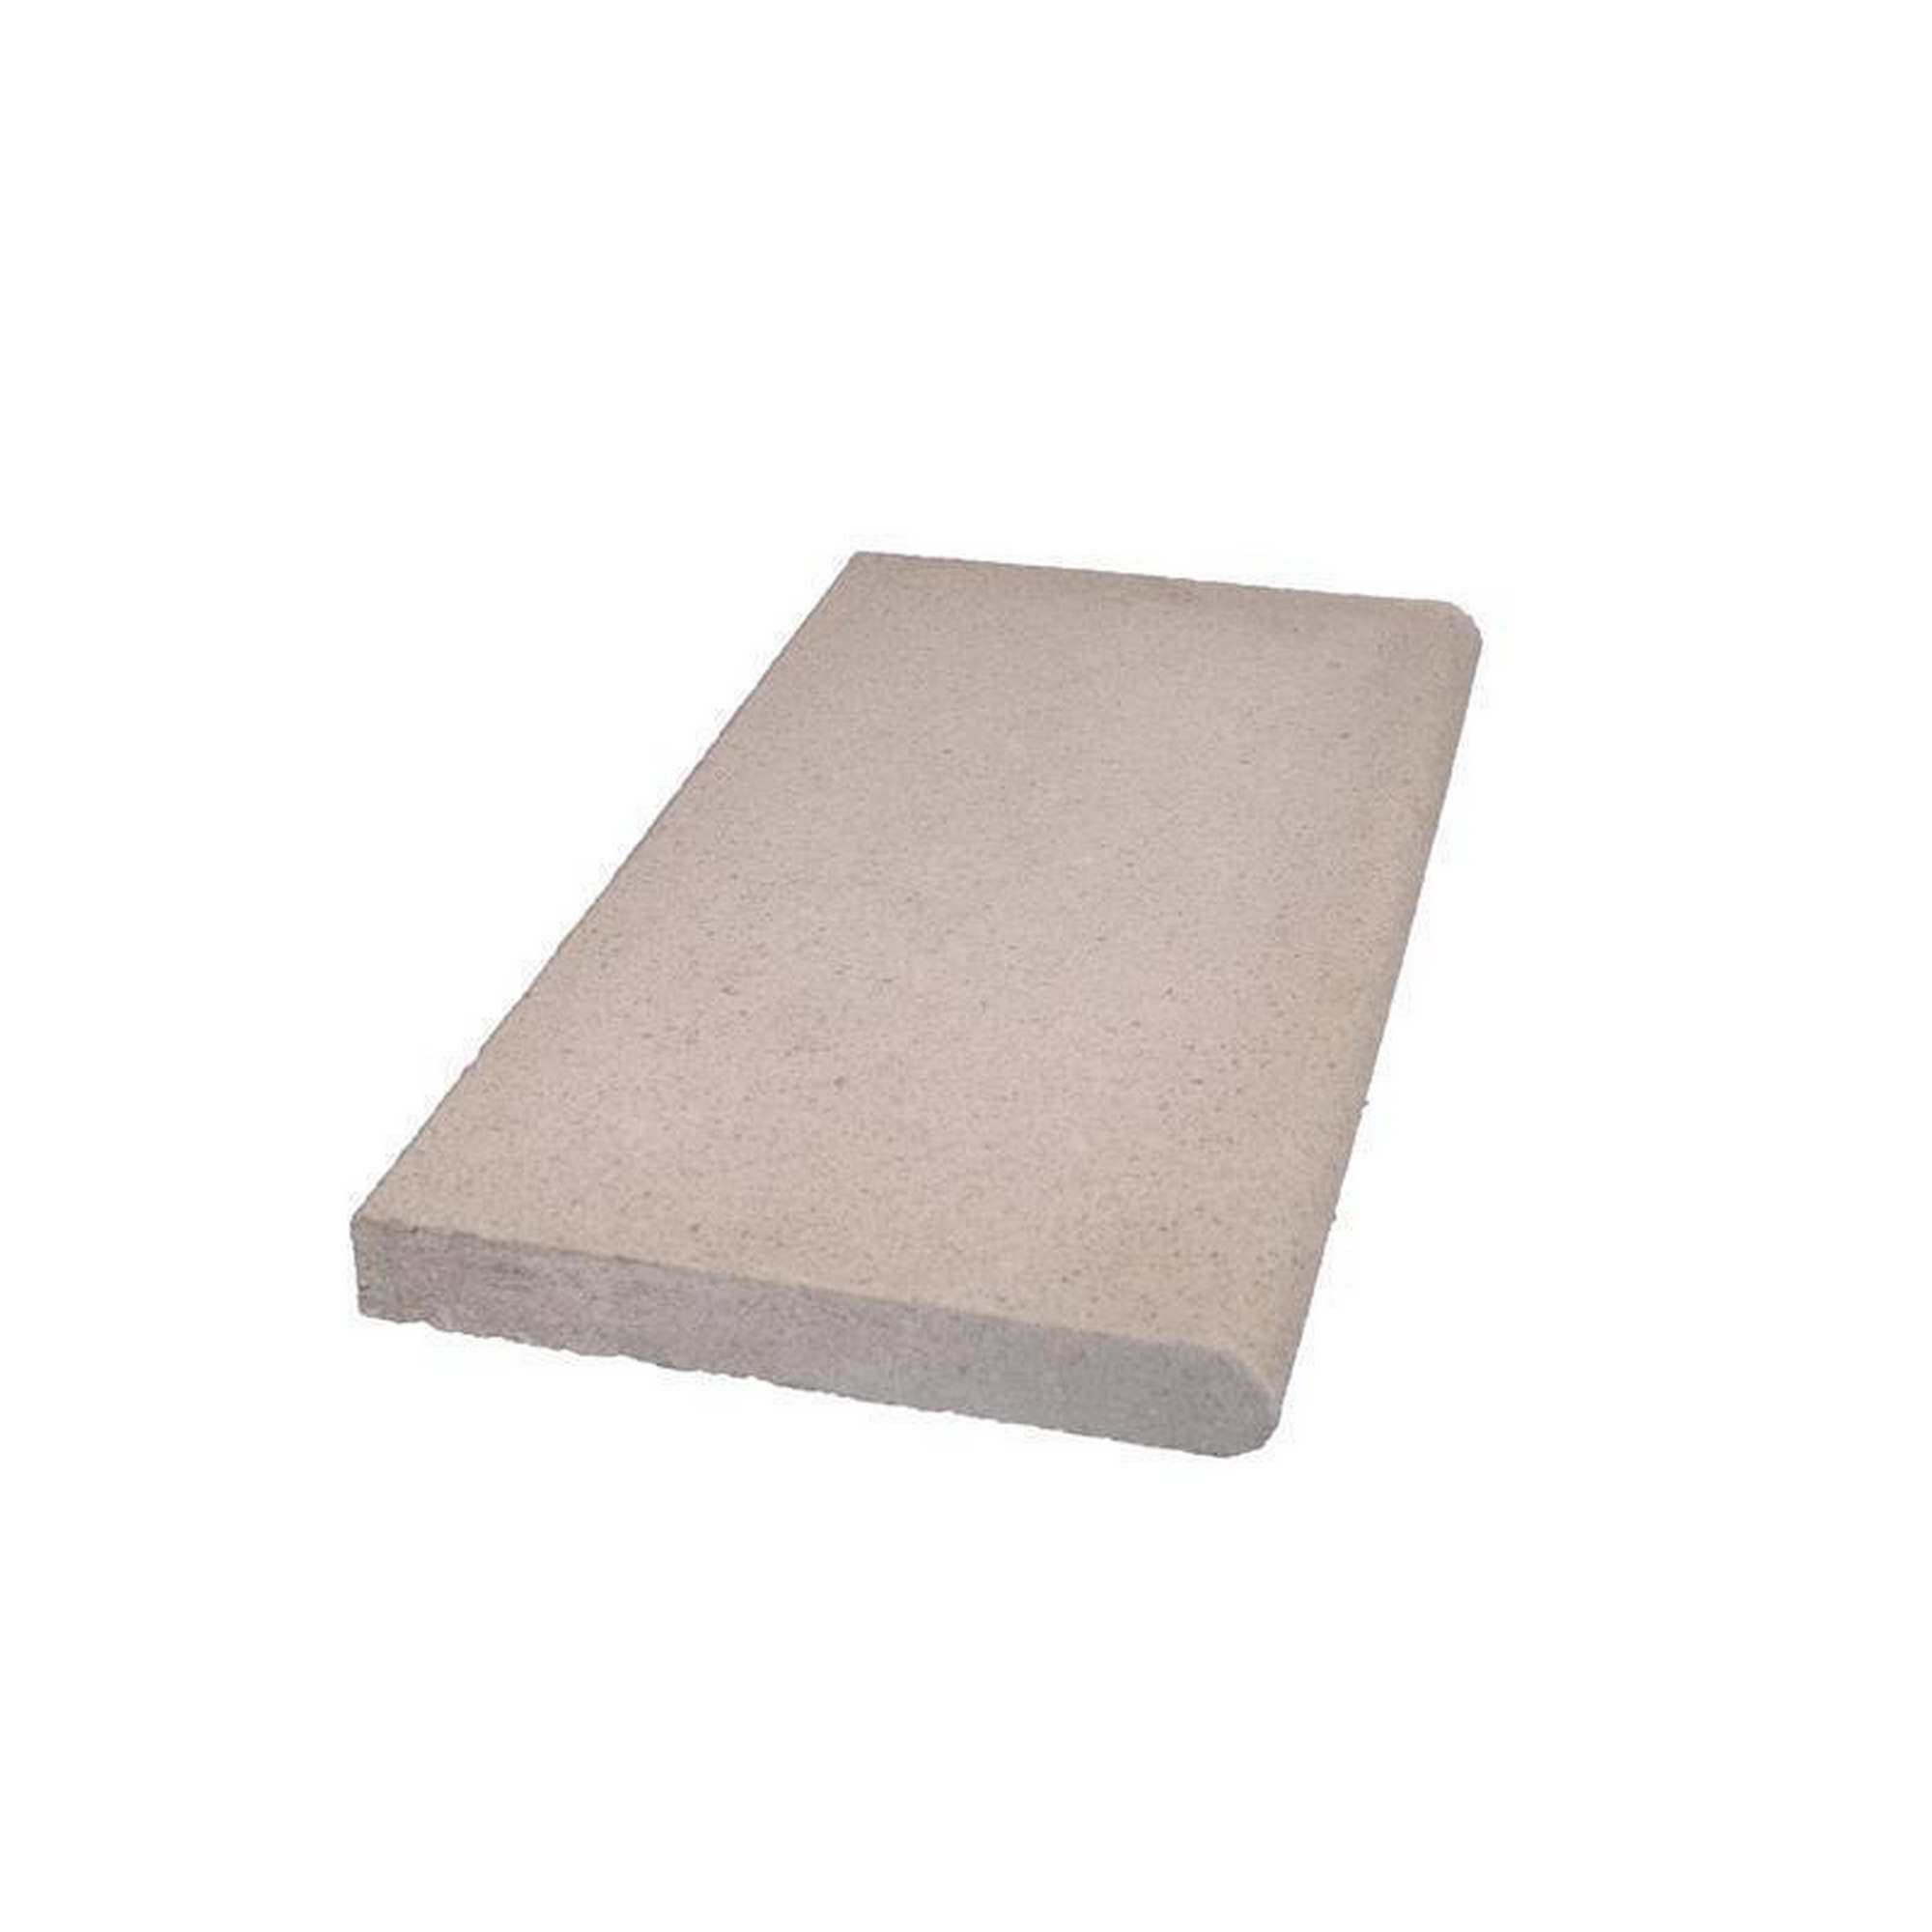 Beckenrandsteine Beton grau 800 x 400 cm für Rechteckbecken + product picture